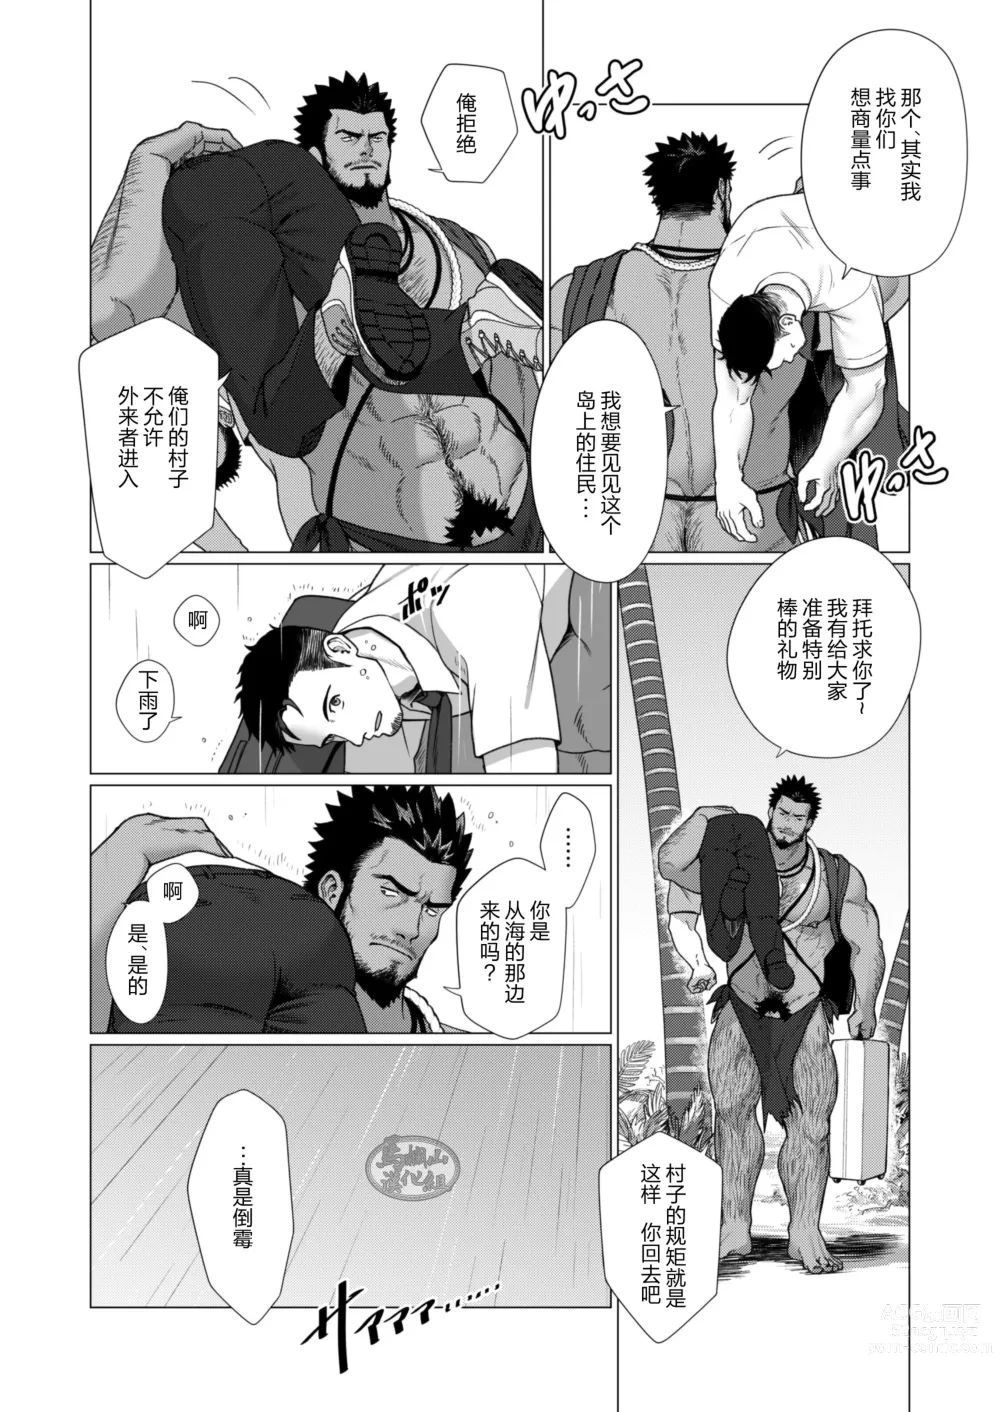 Page 6 of manga 部族の村の男たち